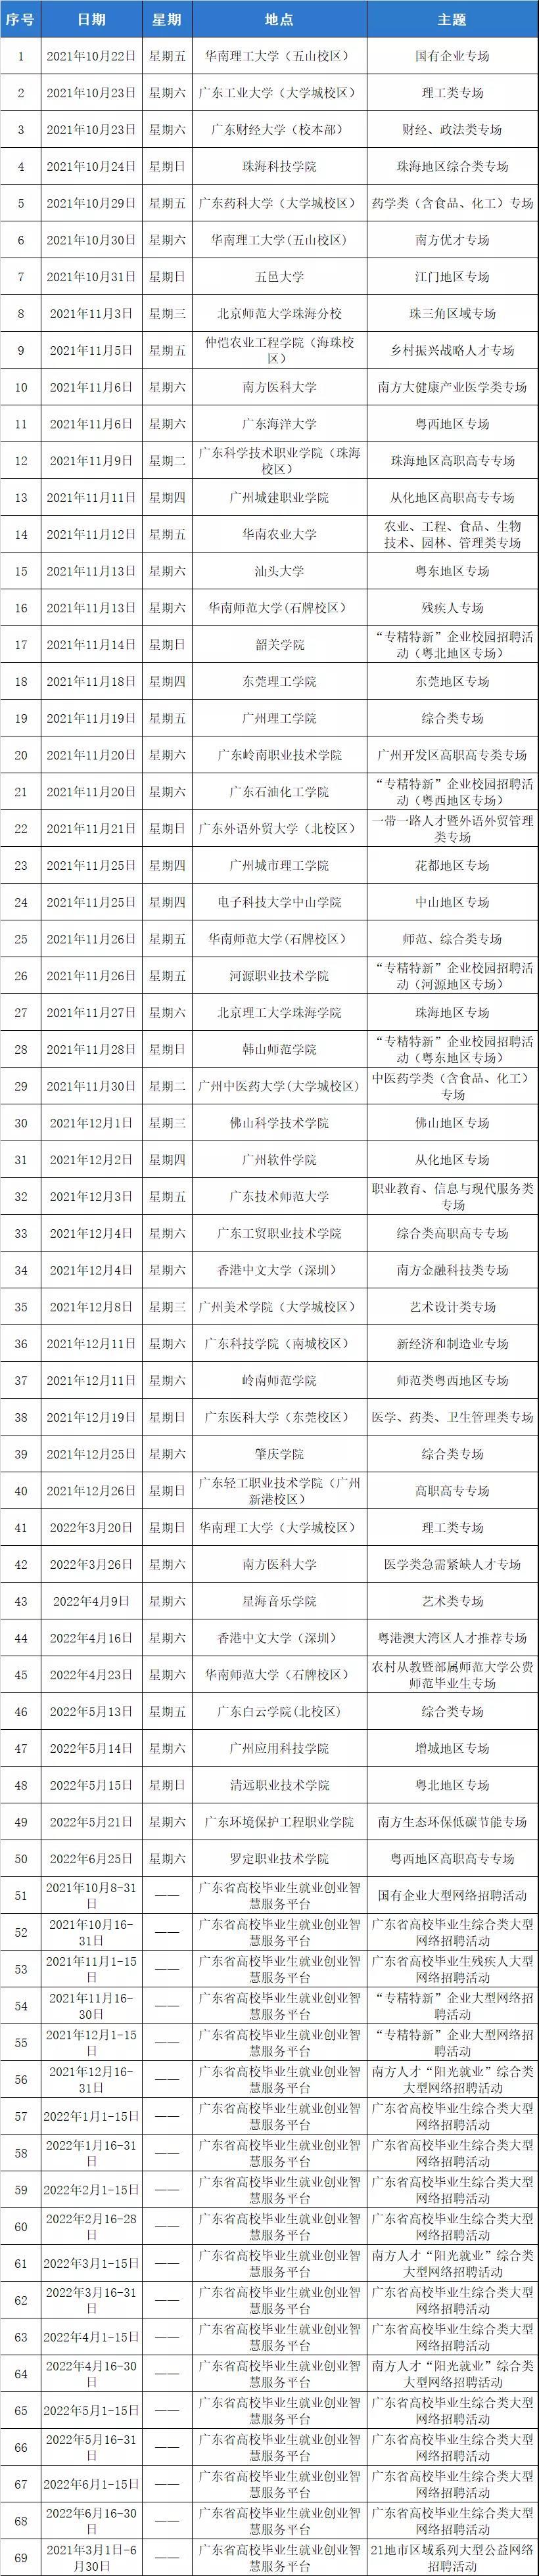 广东省21地市区域系列大型公益网络招聘活动即将举行